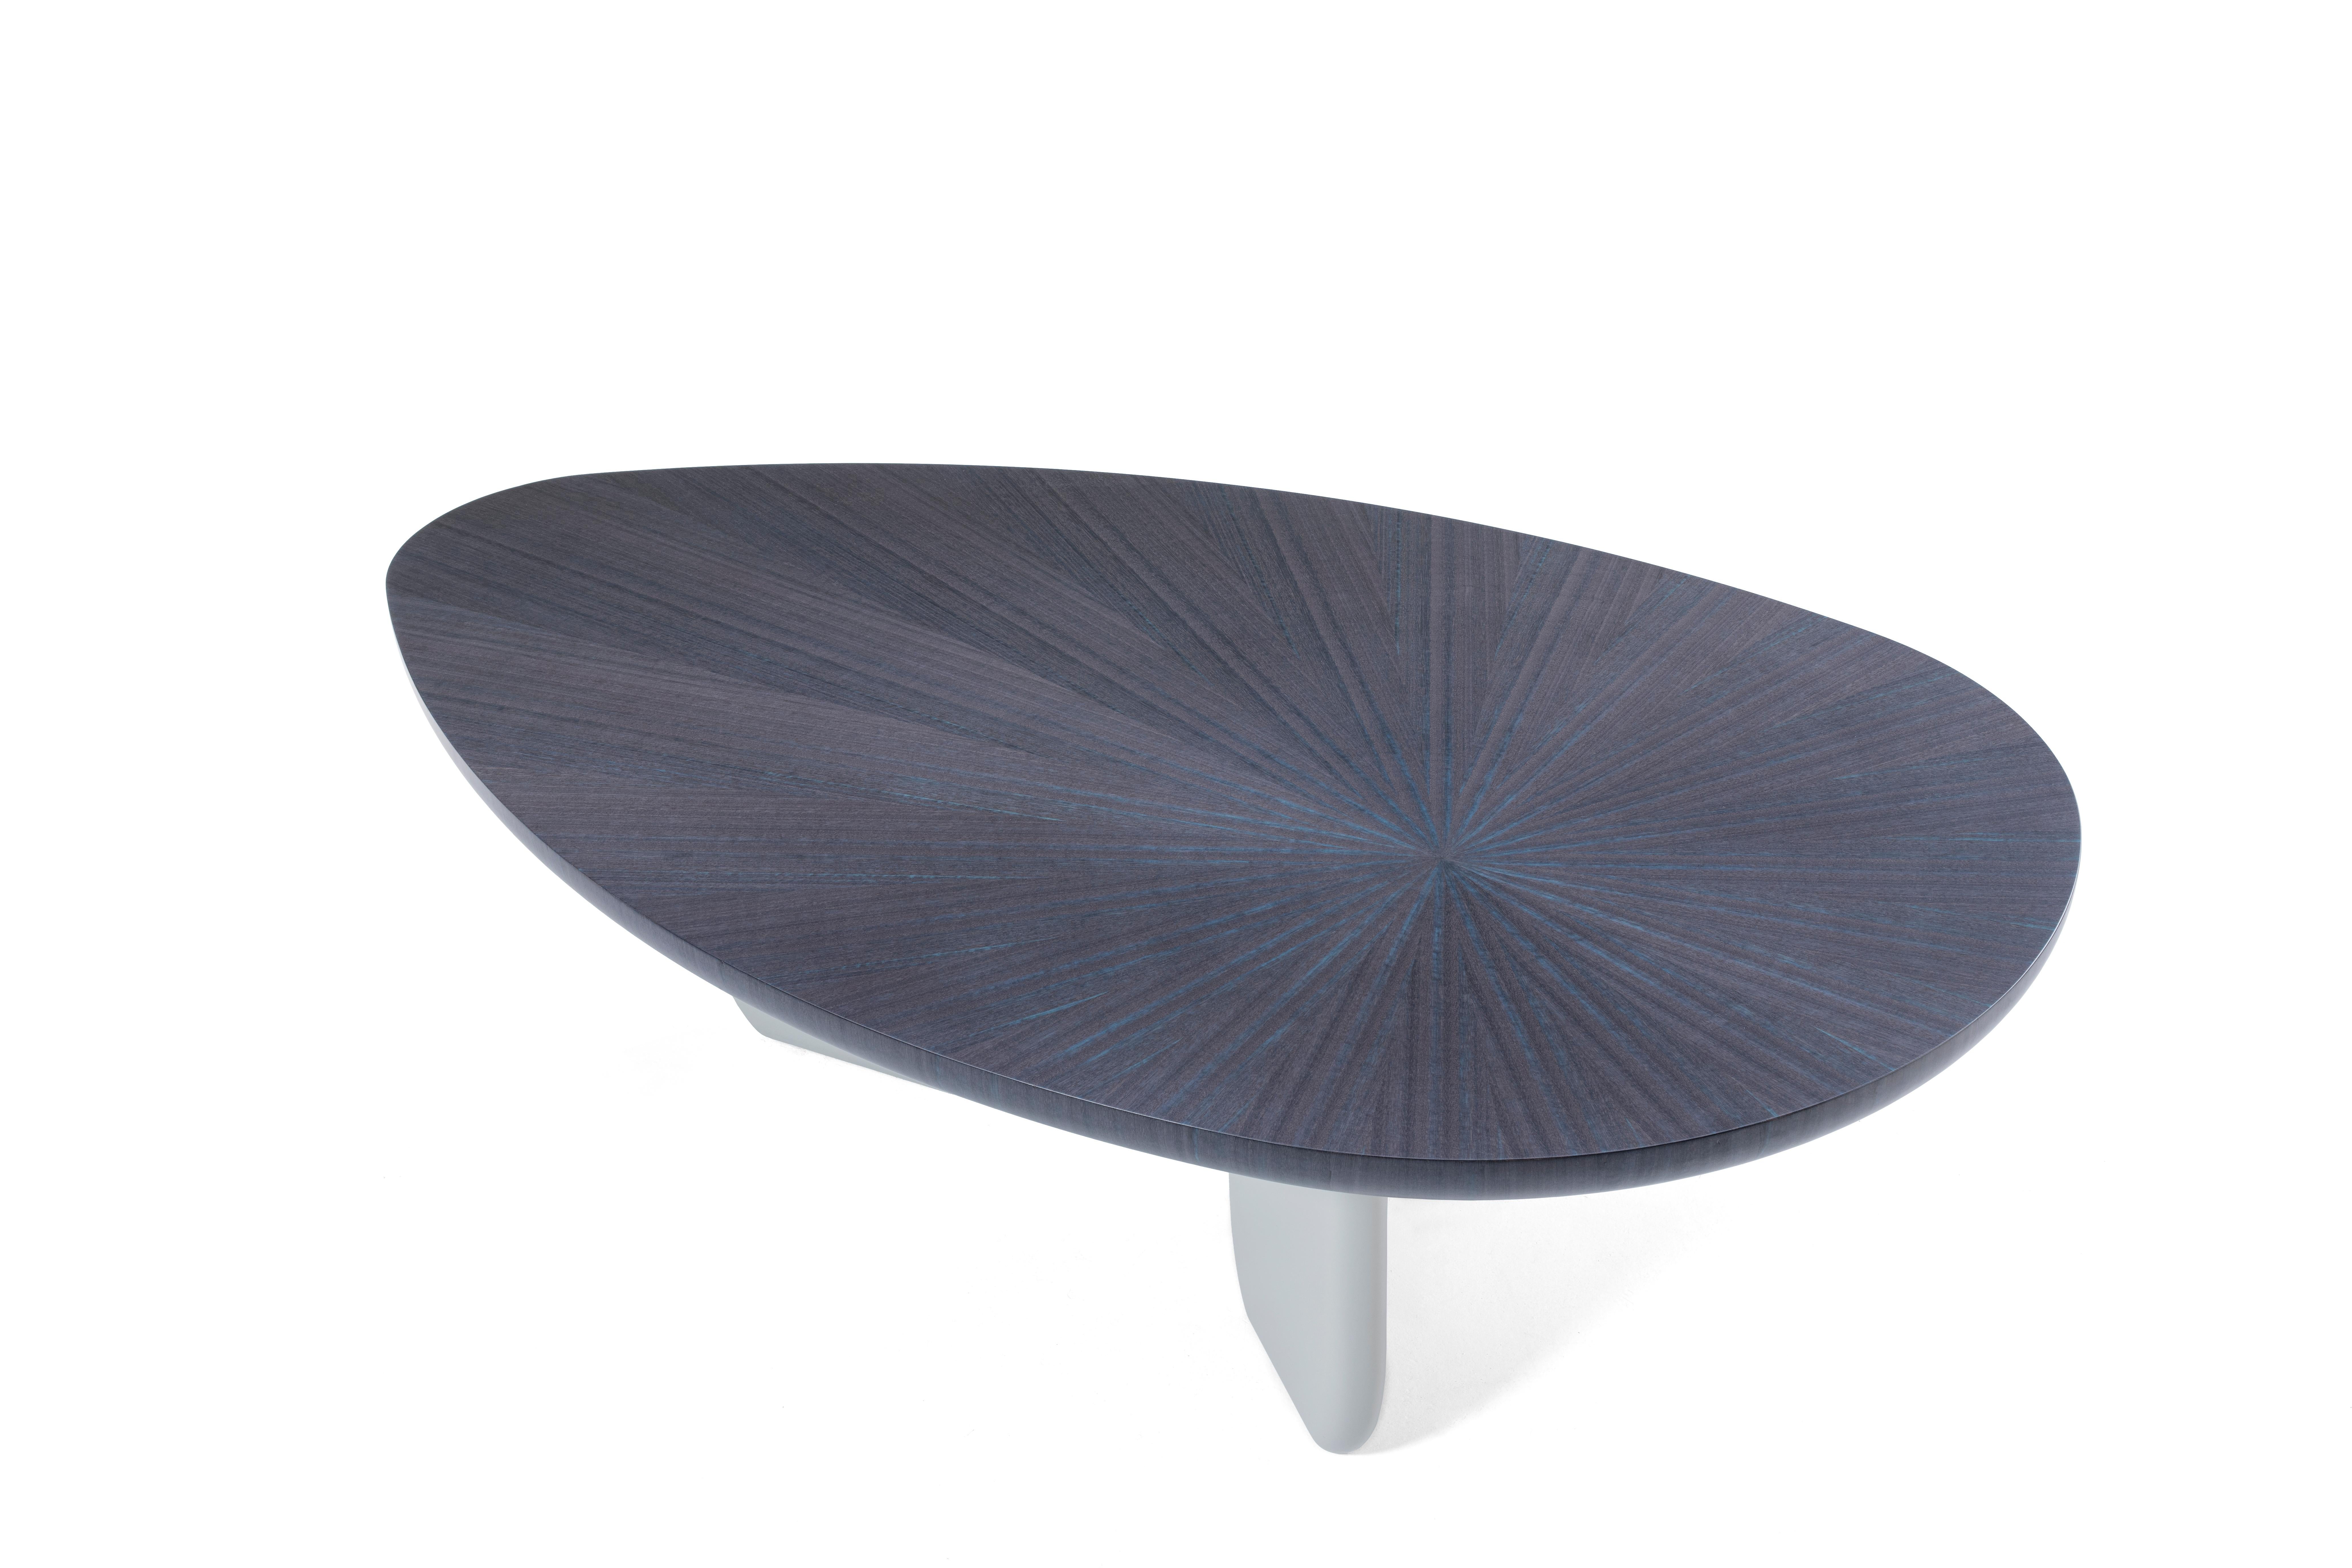 La table basse originale GINGA, en bois ou en laque, est dotée d'un plateau en forme d'ellipse d'une longueur intrigante et d'un piètement à trois pieds.
Disponible sur commande dans une variété de bois et de couleurs de laque de la collection Casa